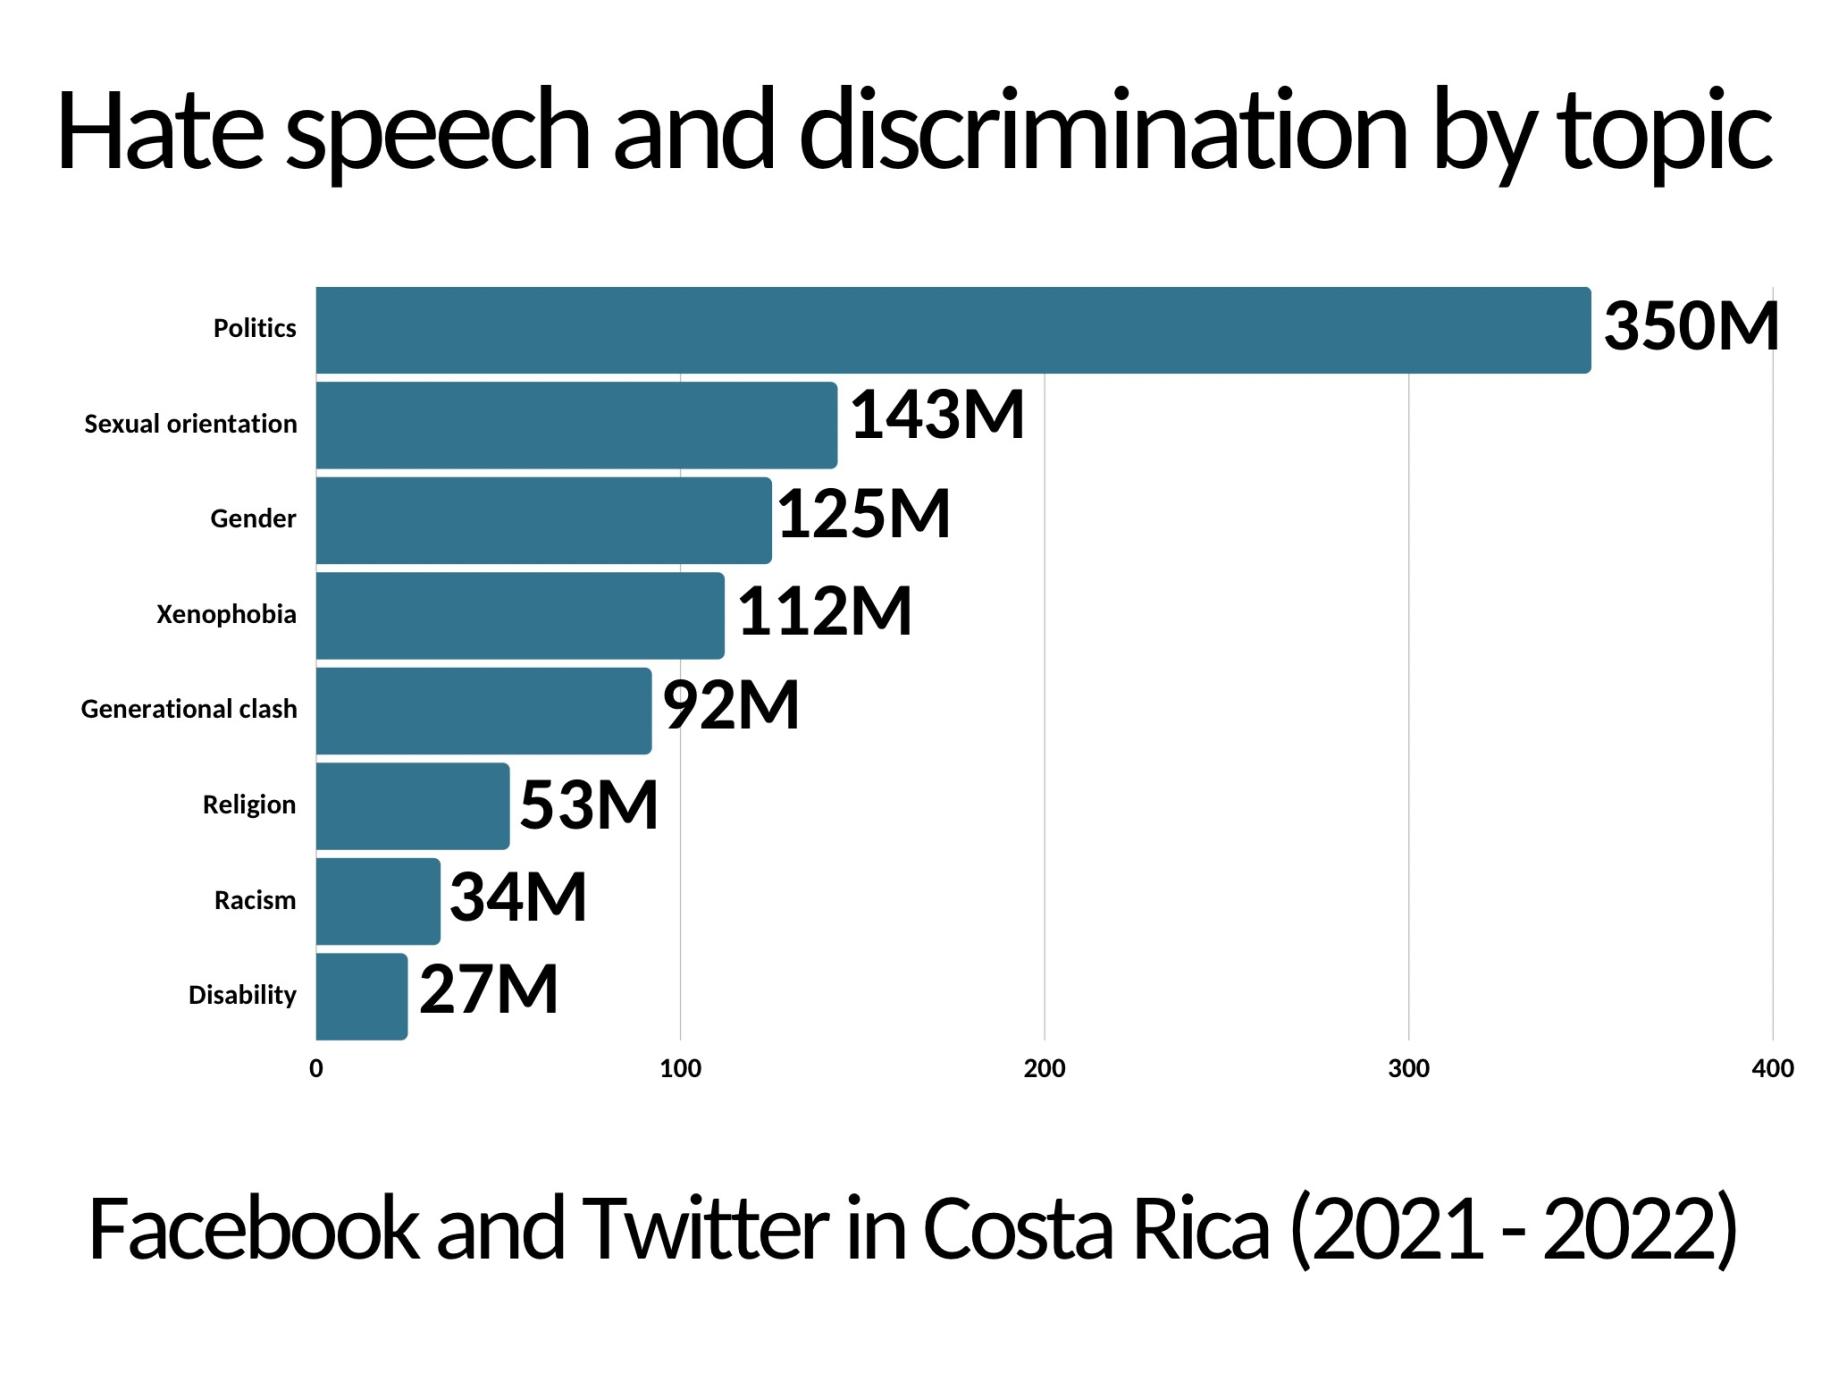 أرقام حول خطاب الكراهية والتمييز بحسب الموضوع.